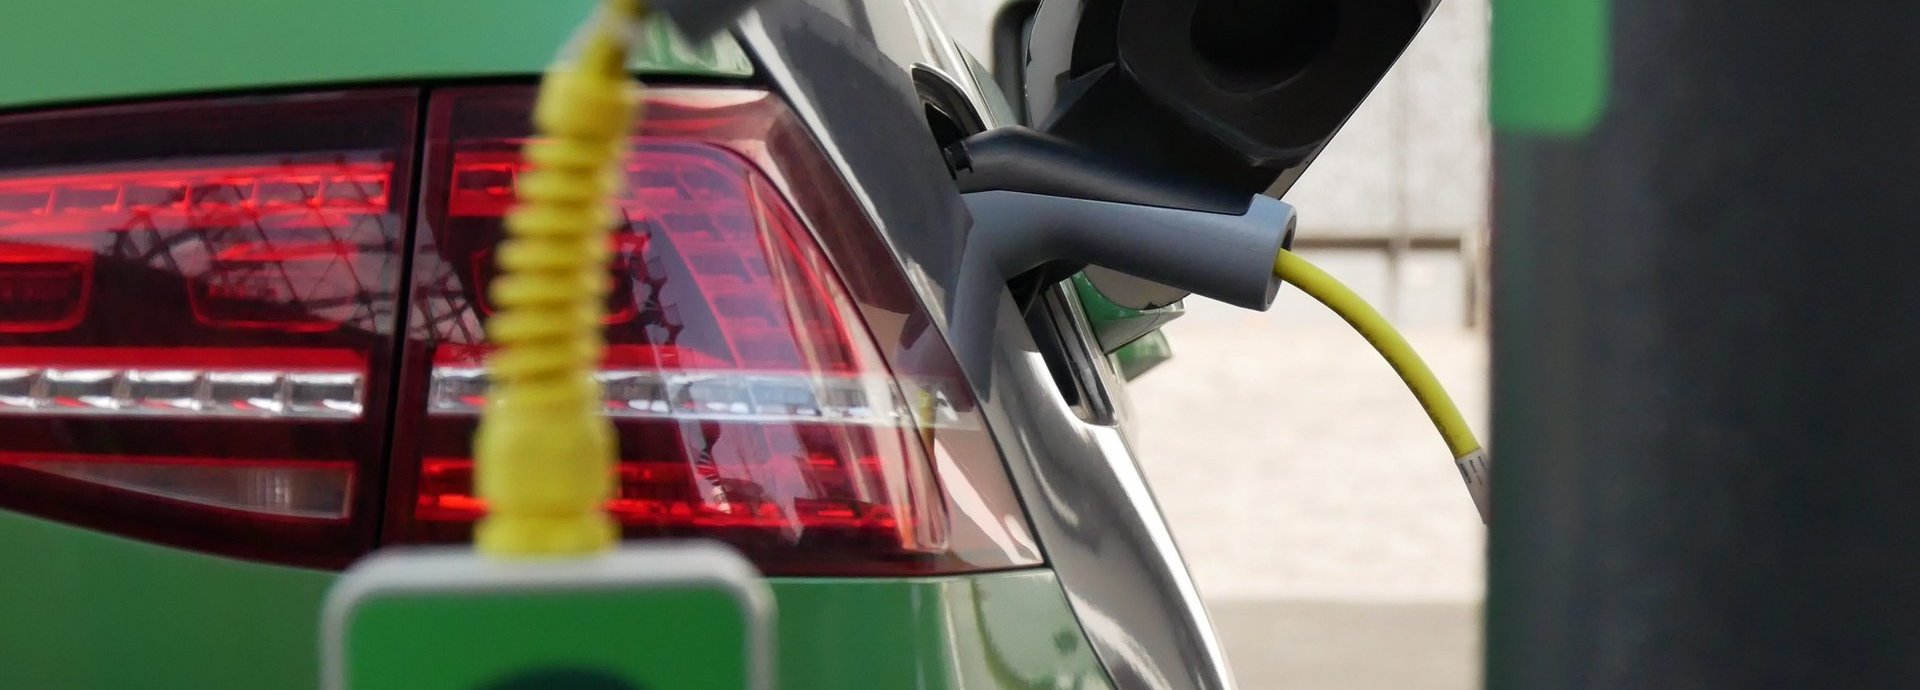 Grünes Elektroauto wird an einer elektrischen Ladesäule geladen